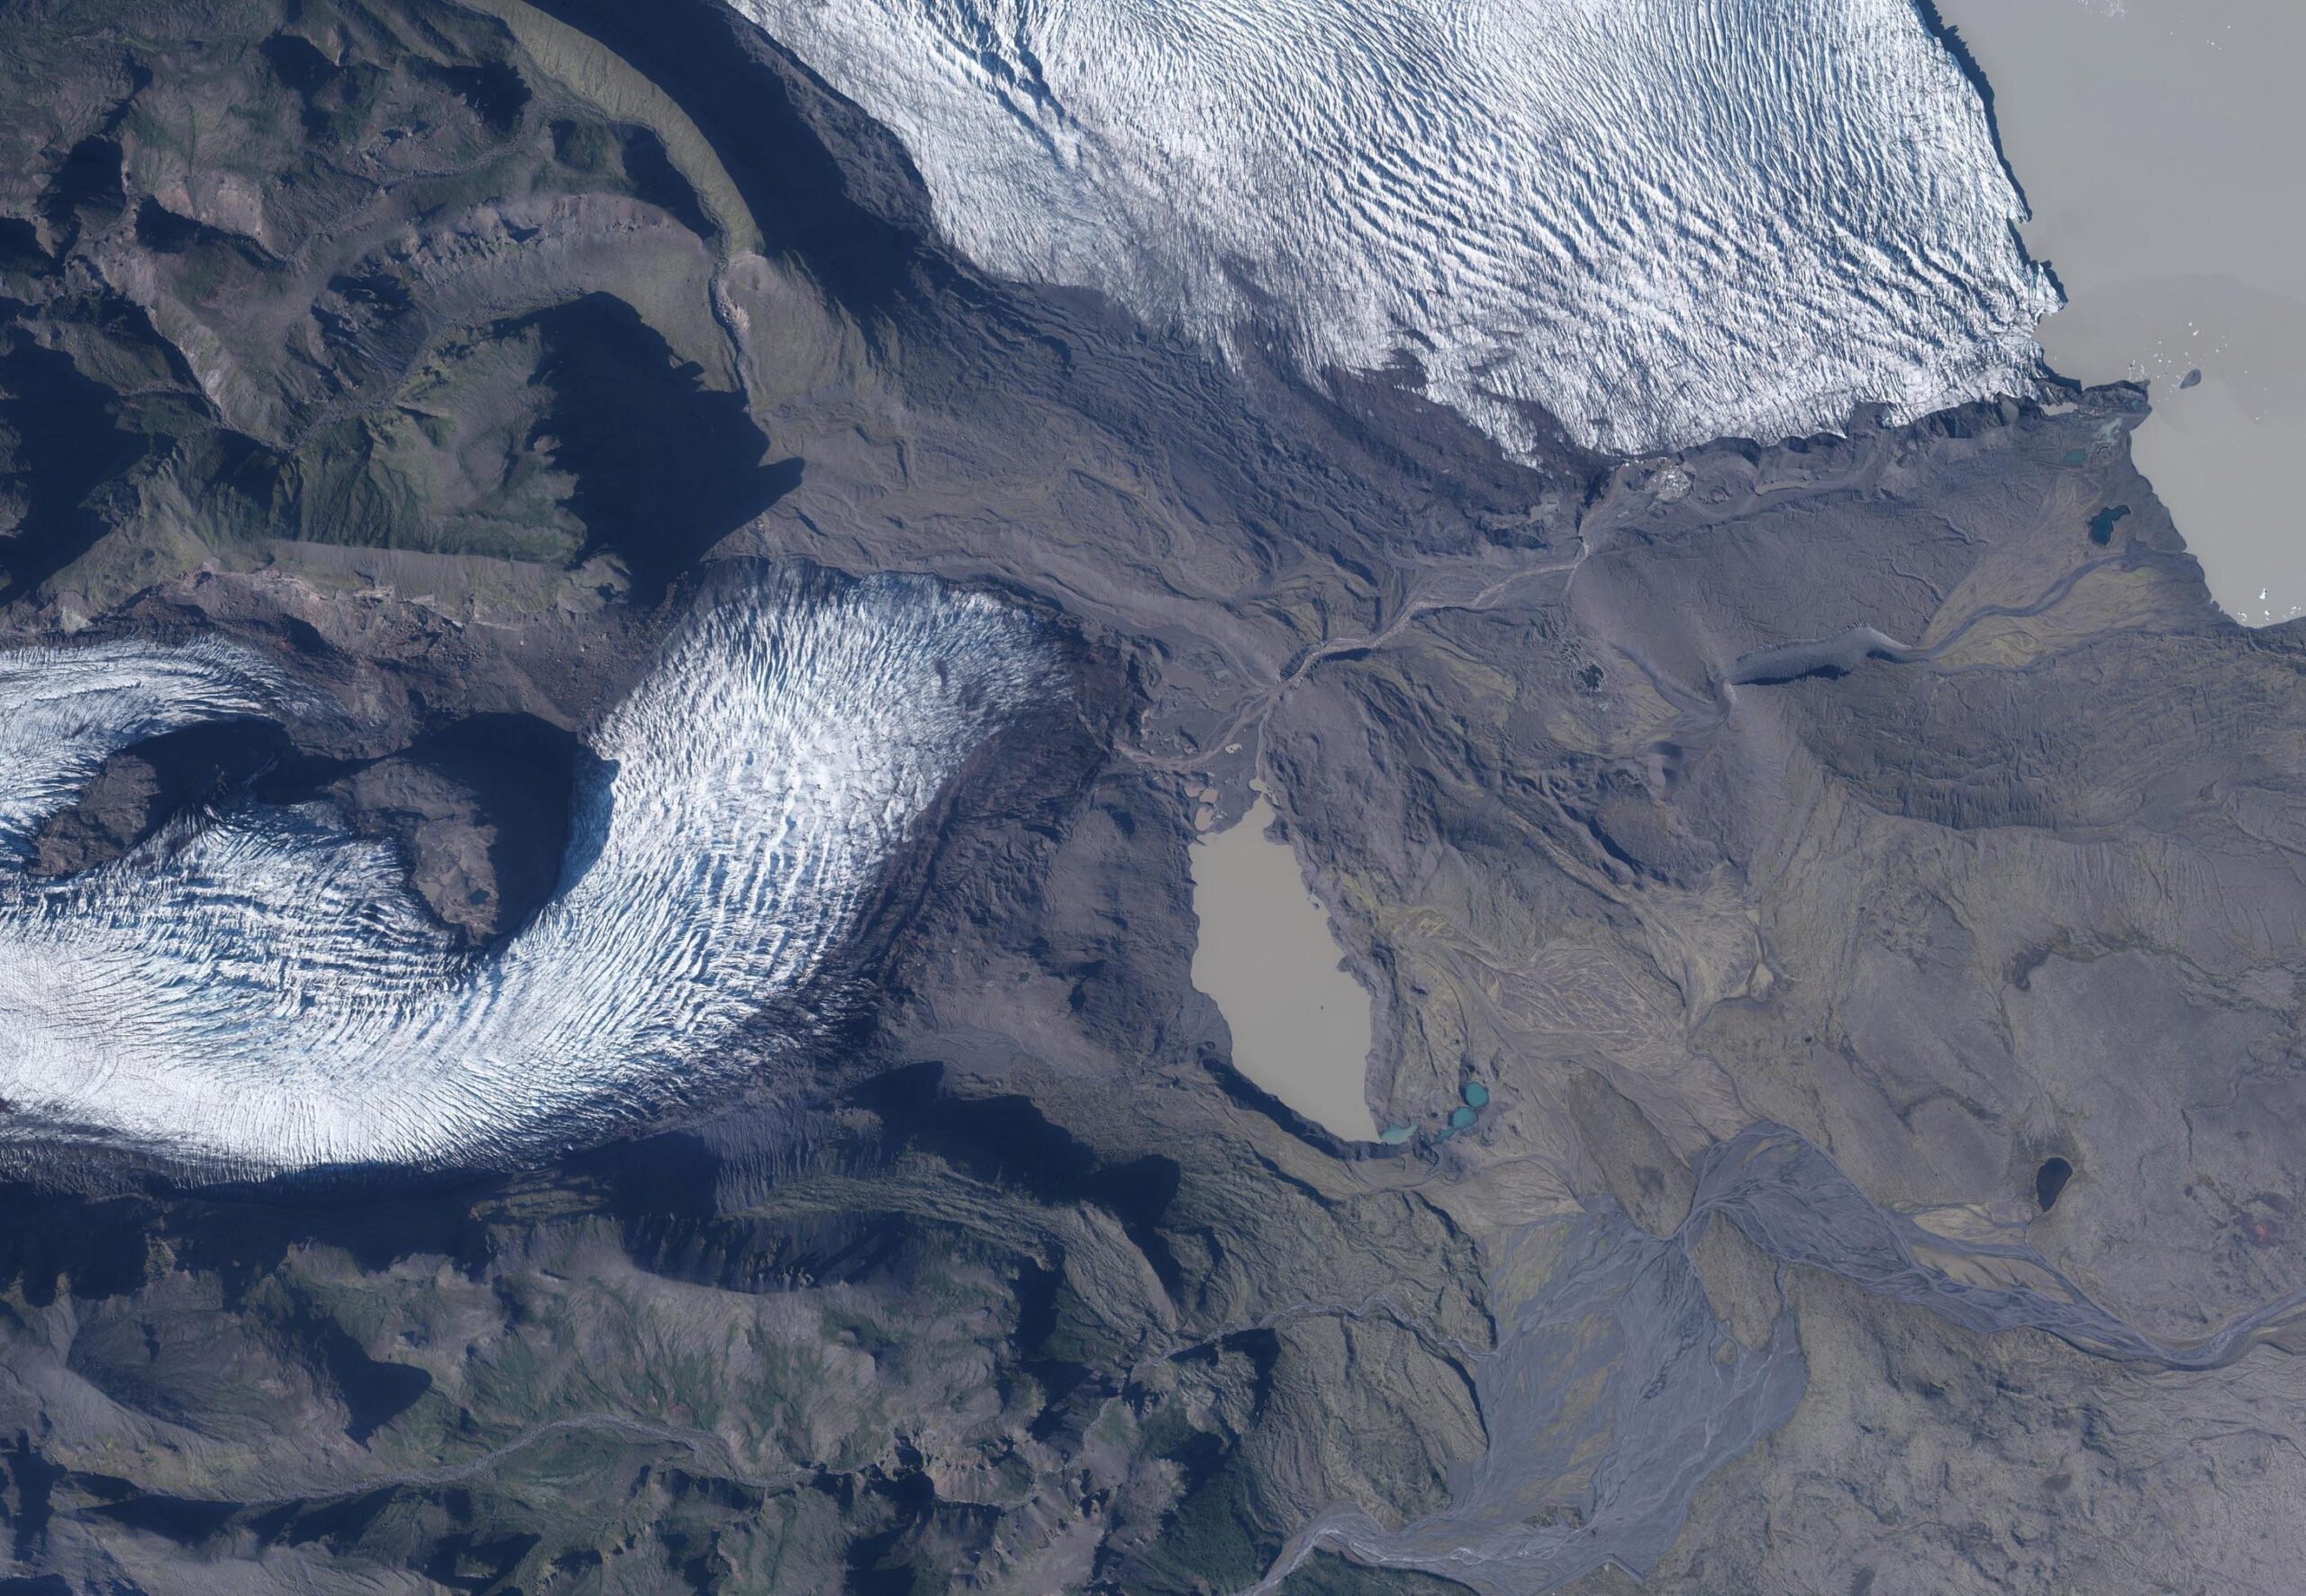 Luchtfoto van de Hrútárjökull en Fjallsjökull in 2021.